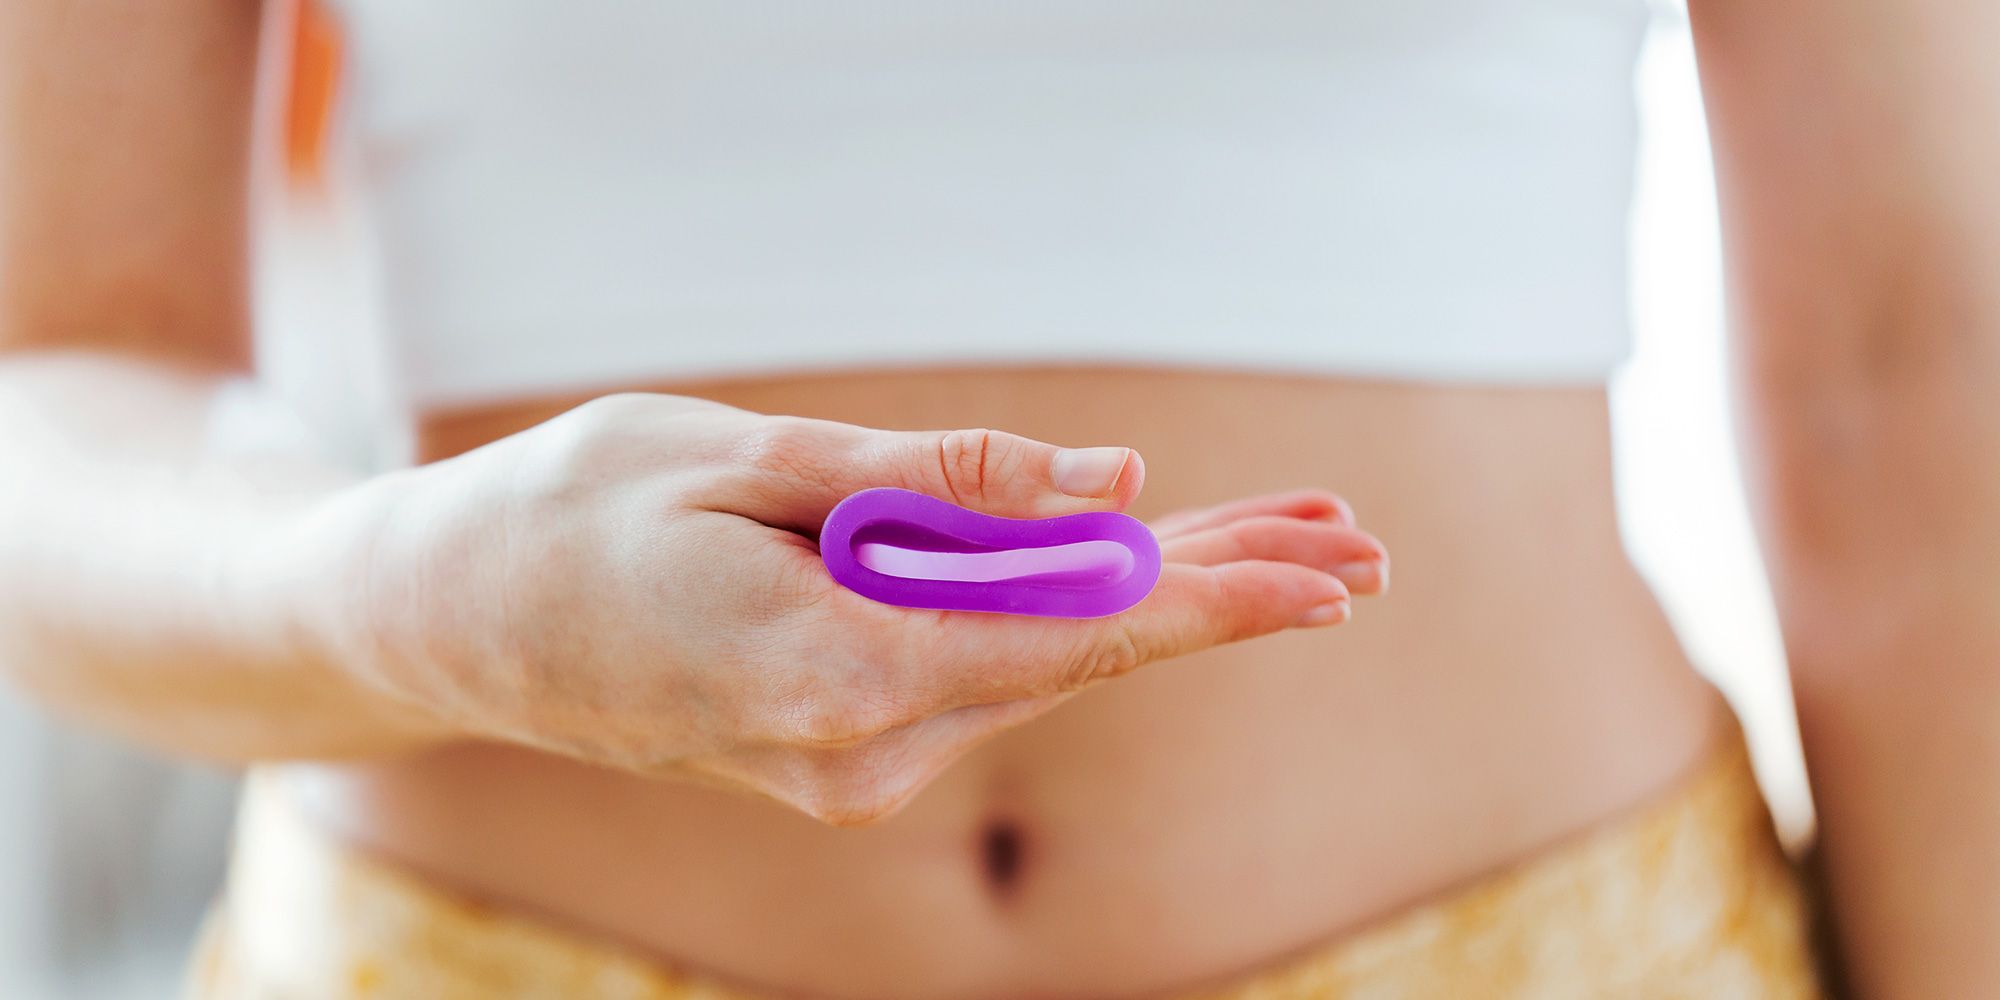 Menstrual Cup Reviews - FLEX vs. Ziggy Menstrual Cup For Period Sex